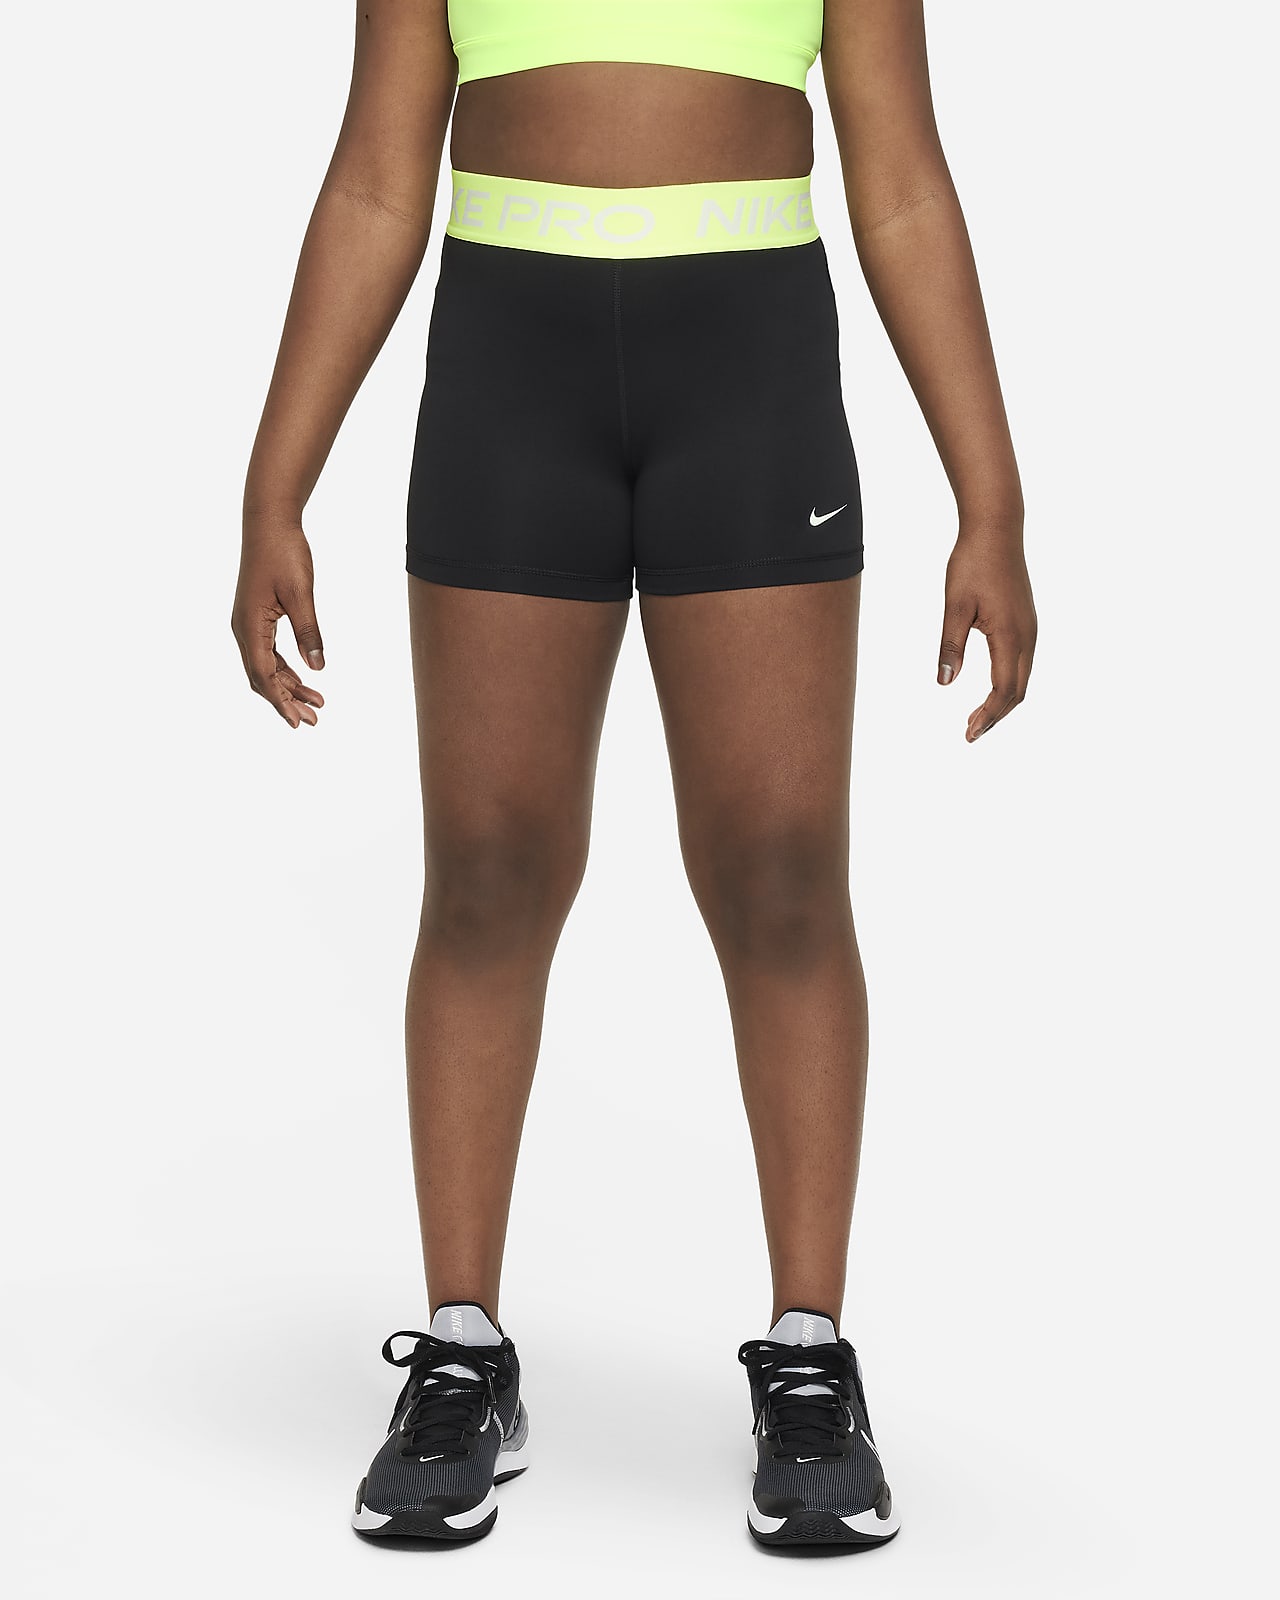 Nike girls Running Shorts 4 Little Kids One Size Black/White